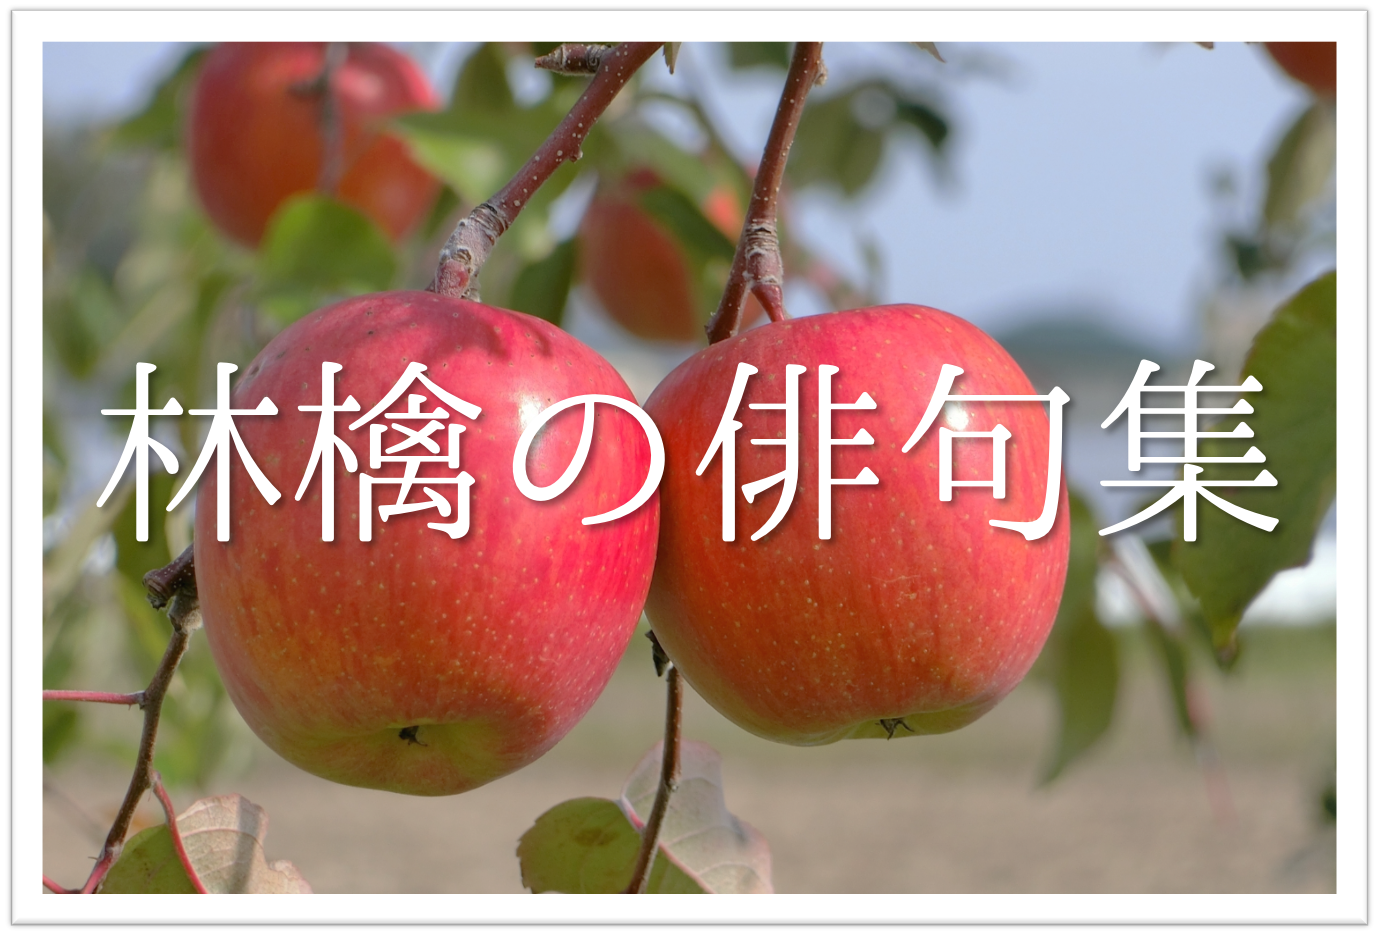 林檎 りんご の俳句 30選 知っておきたい 季語を含むおすすめ有名